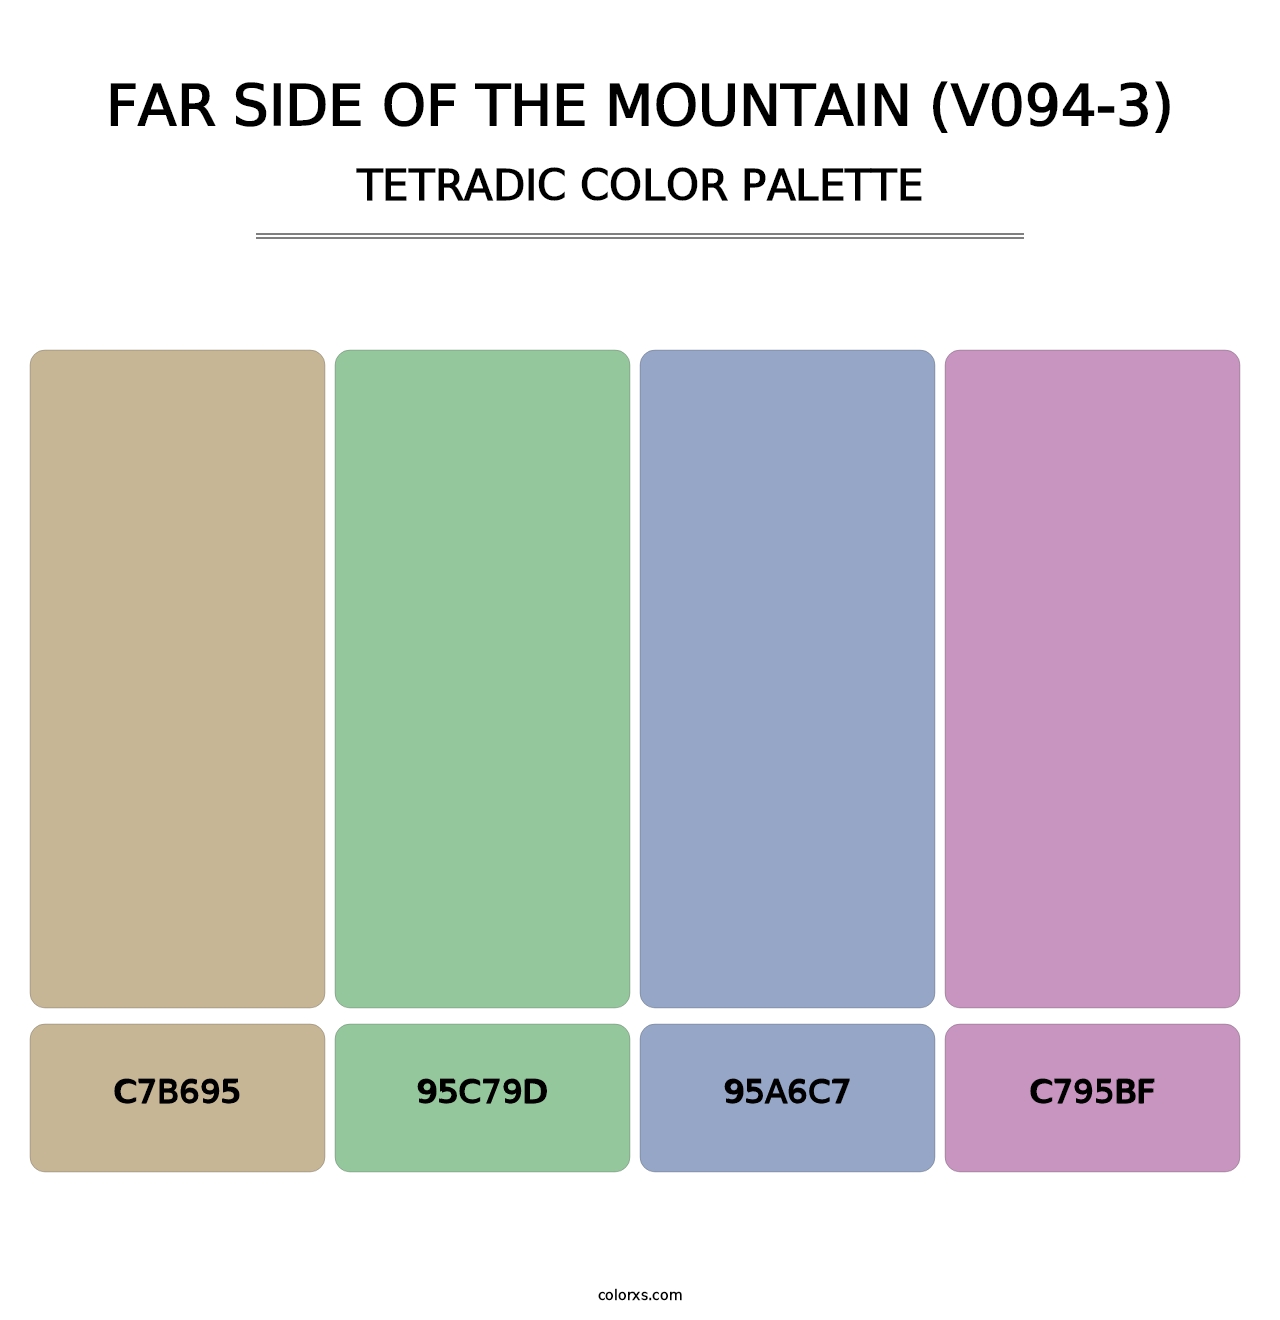 Far Side of the Mountain (V094-3) - Tetradic Color Palette